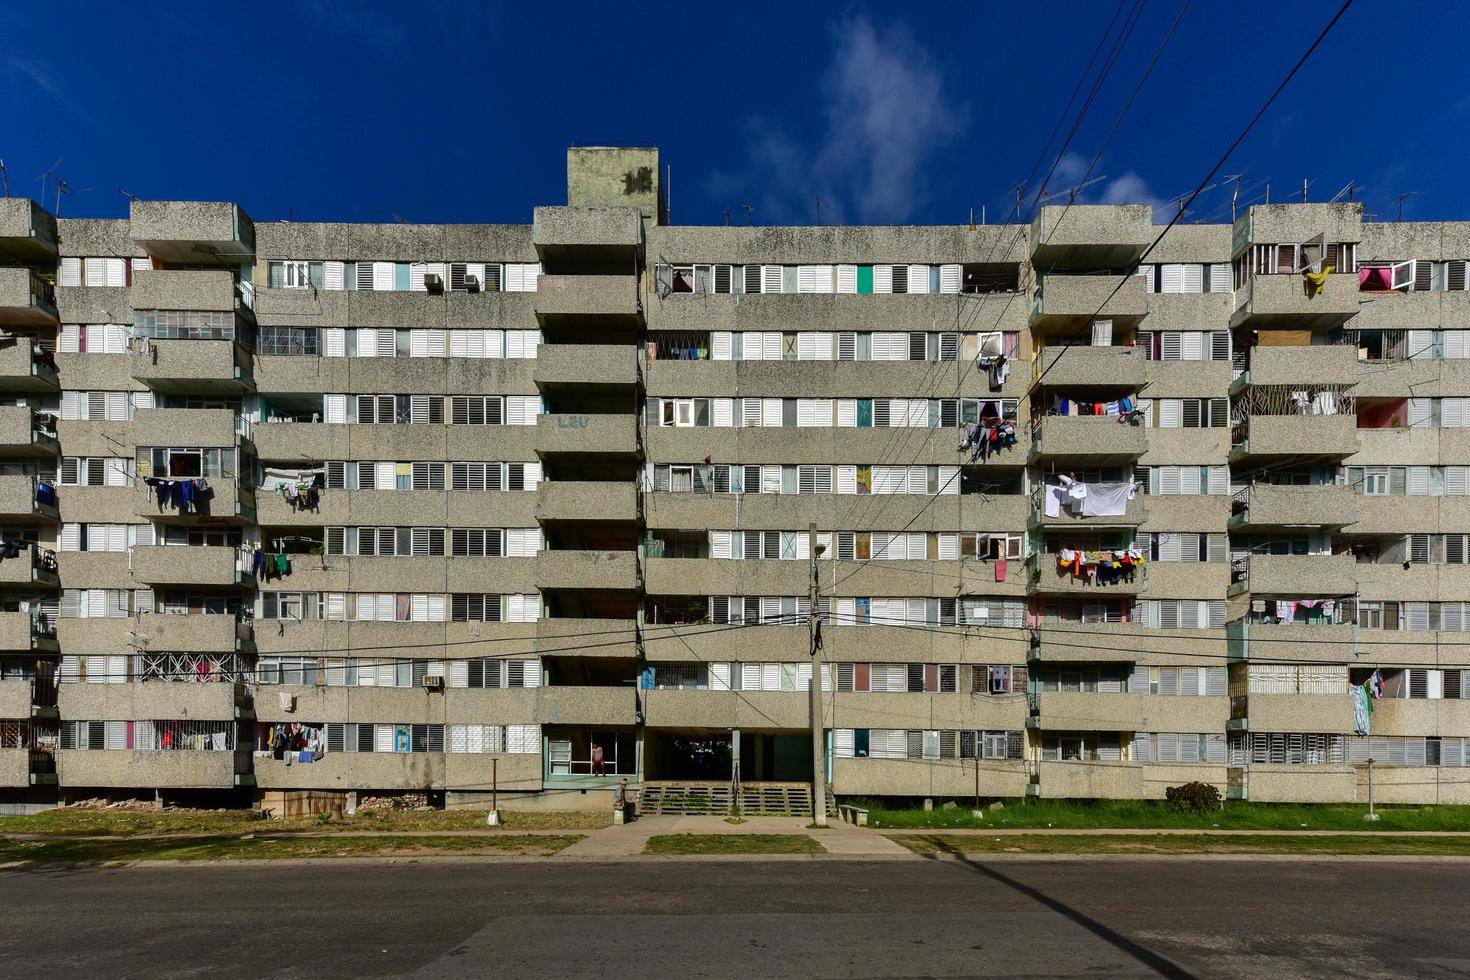 edifício em alamar, bairro da zona leste de havana, em cuba. este distrito é principalmente construção pré-fabricada de arquitetura de estilo soviético, 2022 foto